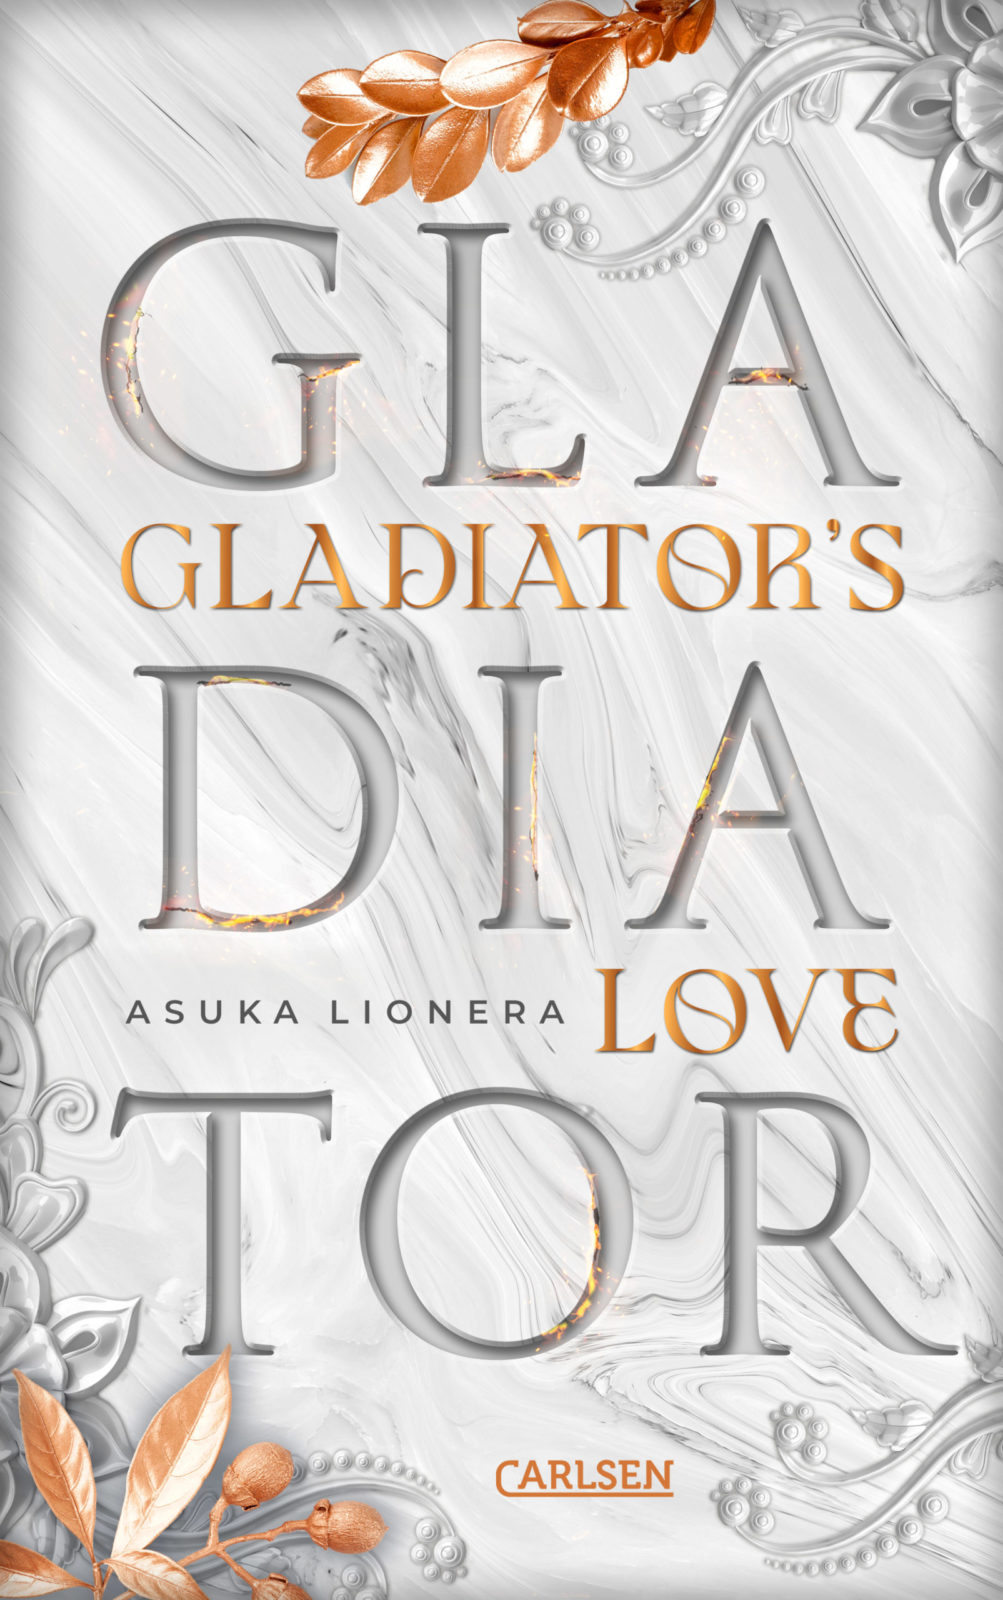 Gladiator’s Love